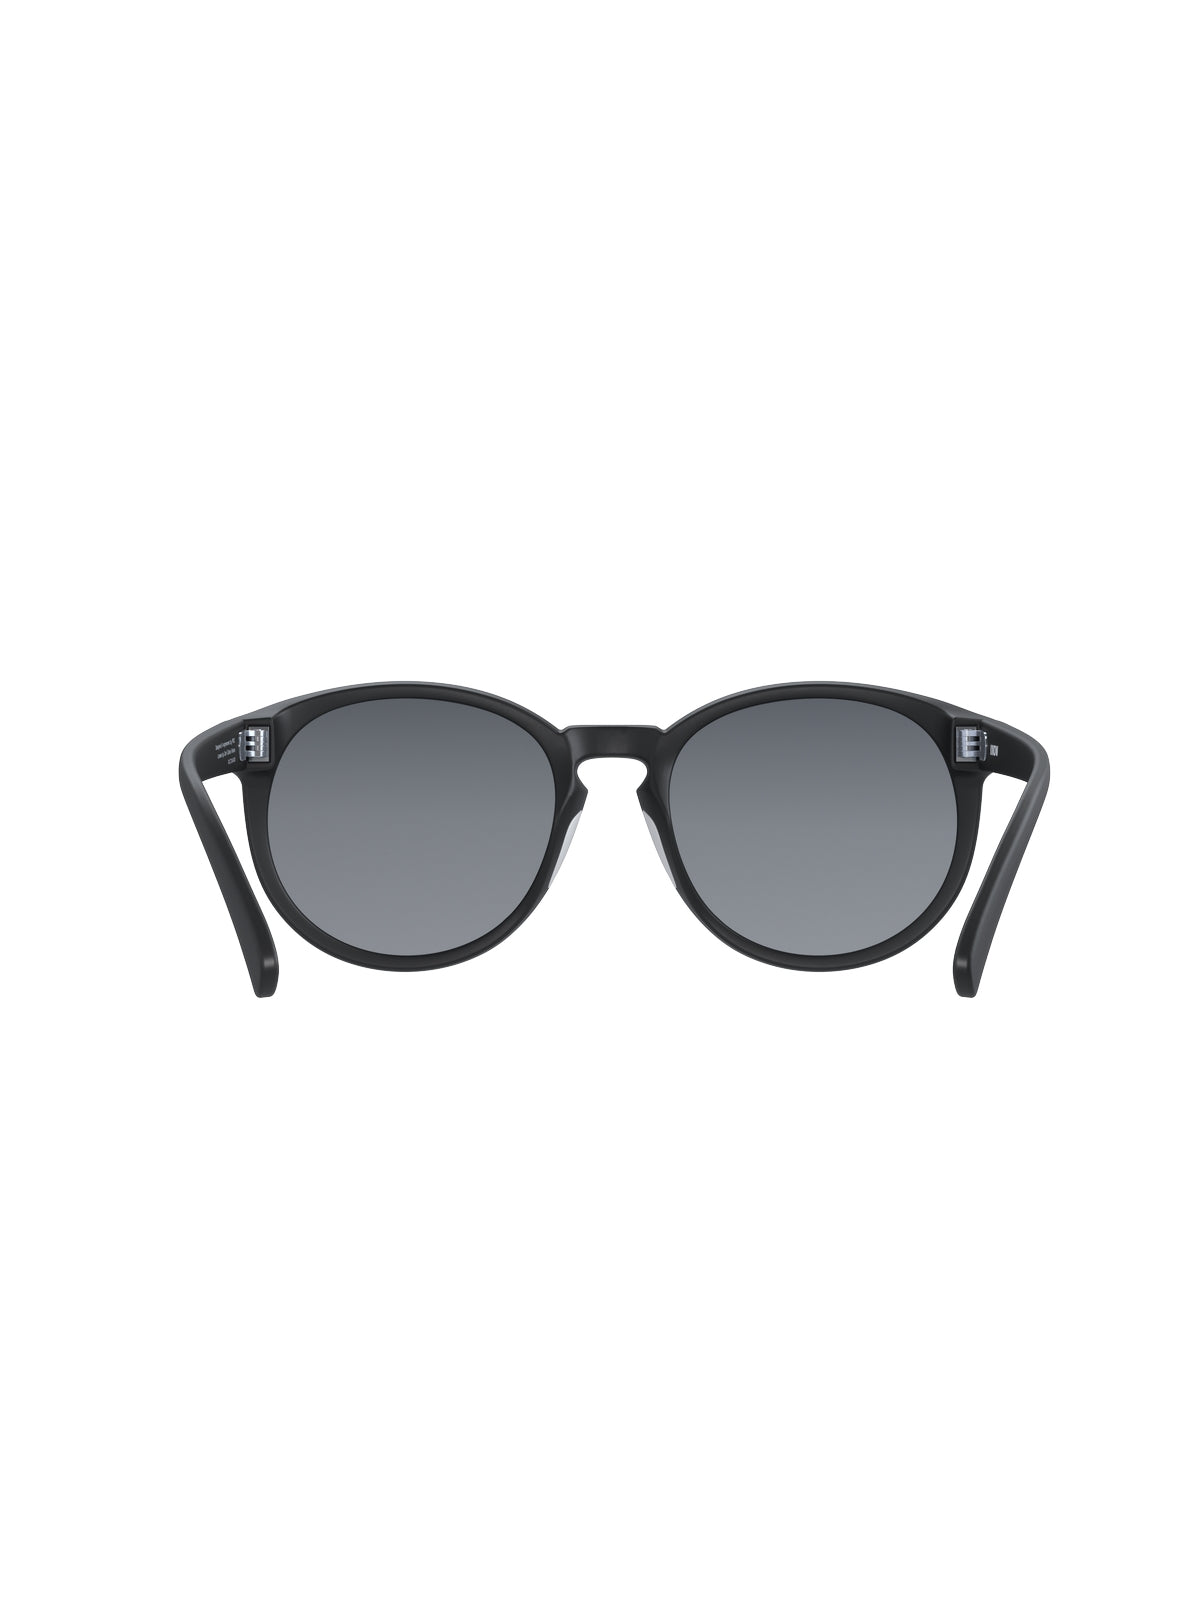 Okulary przeciwsłoneczne POC KNOW black - Clarity Universal/Sunny Grey Cat 3